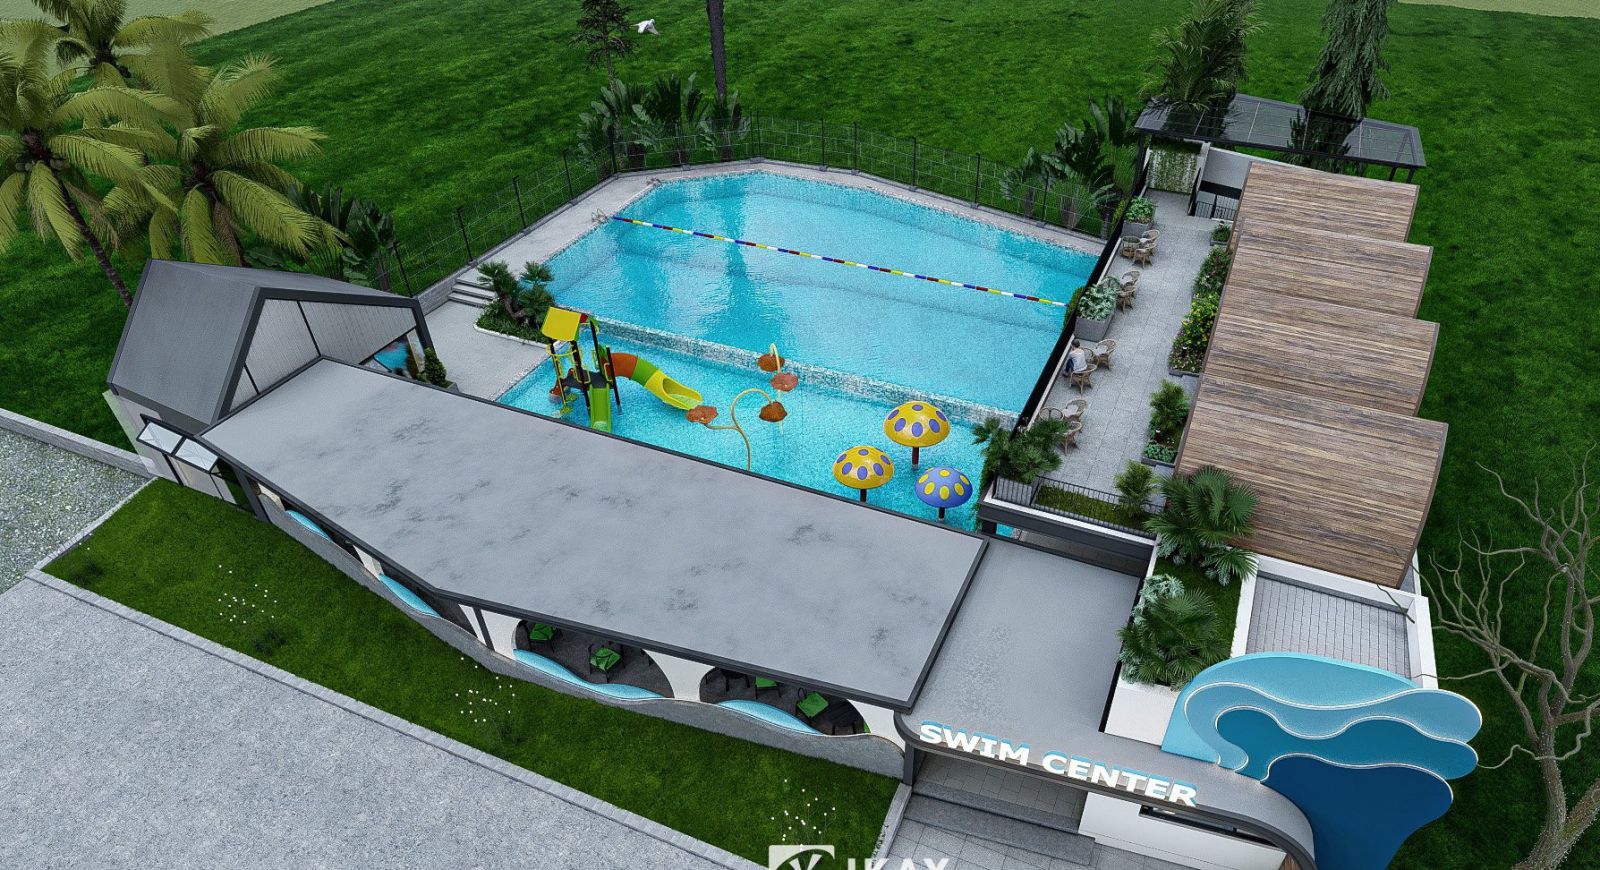 Công ty thiết kế xây dựng hồ bơi Phúc Khang chuyên thi công hồ bơi kinh doanh, cong ty xay dung hồ bơi nhỏ, thi cong be boi mini